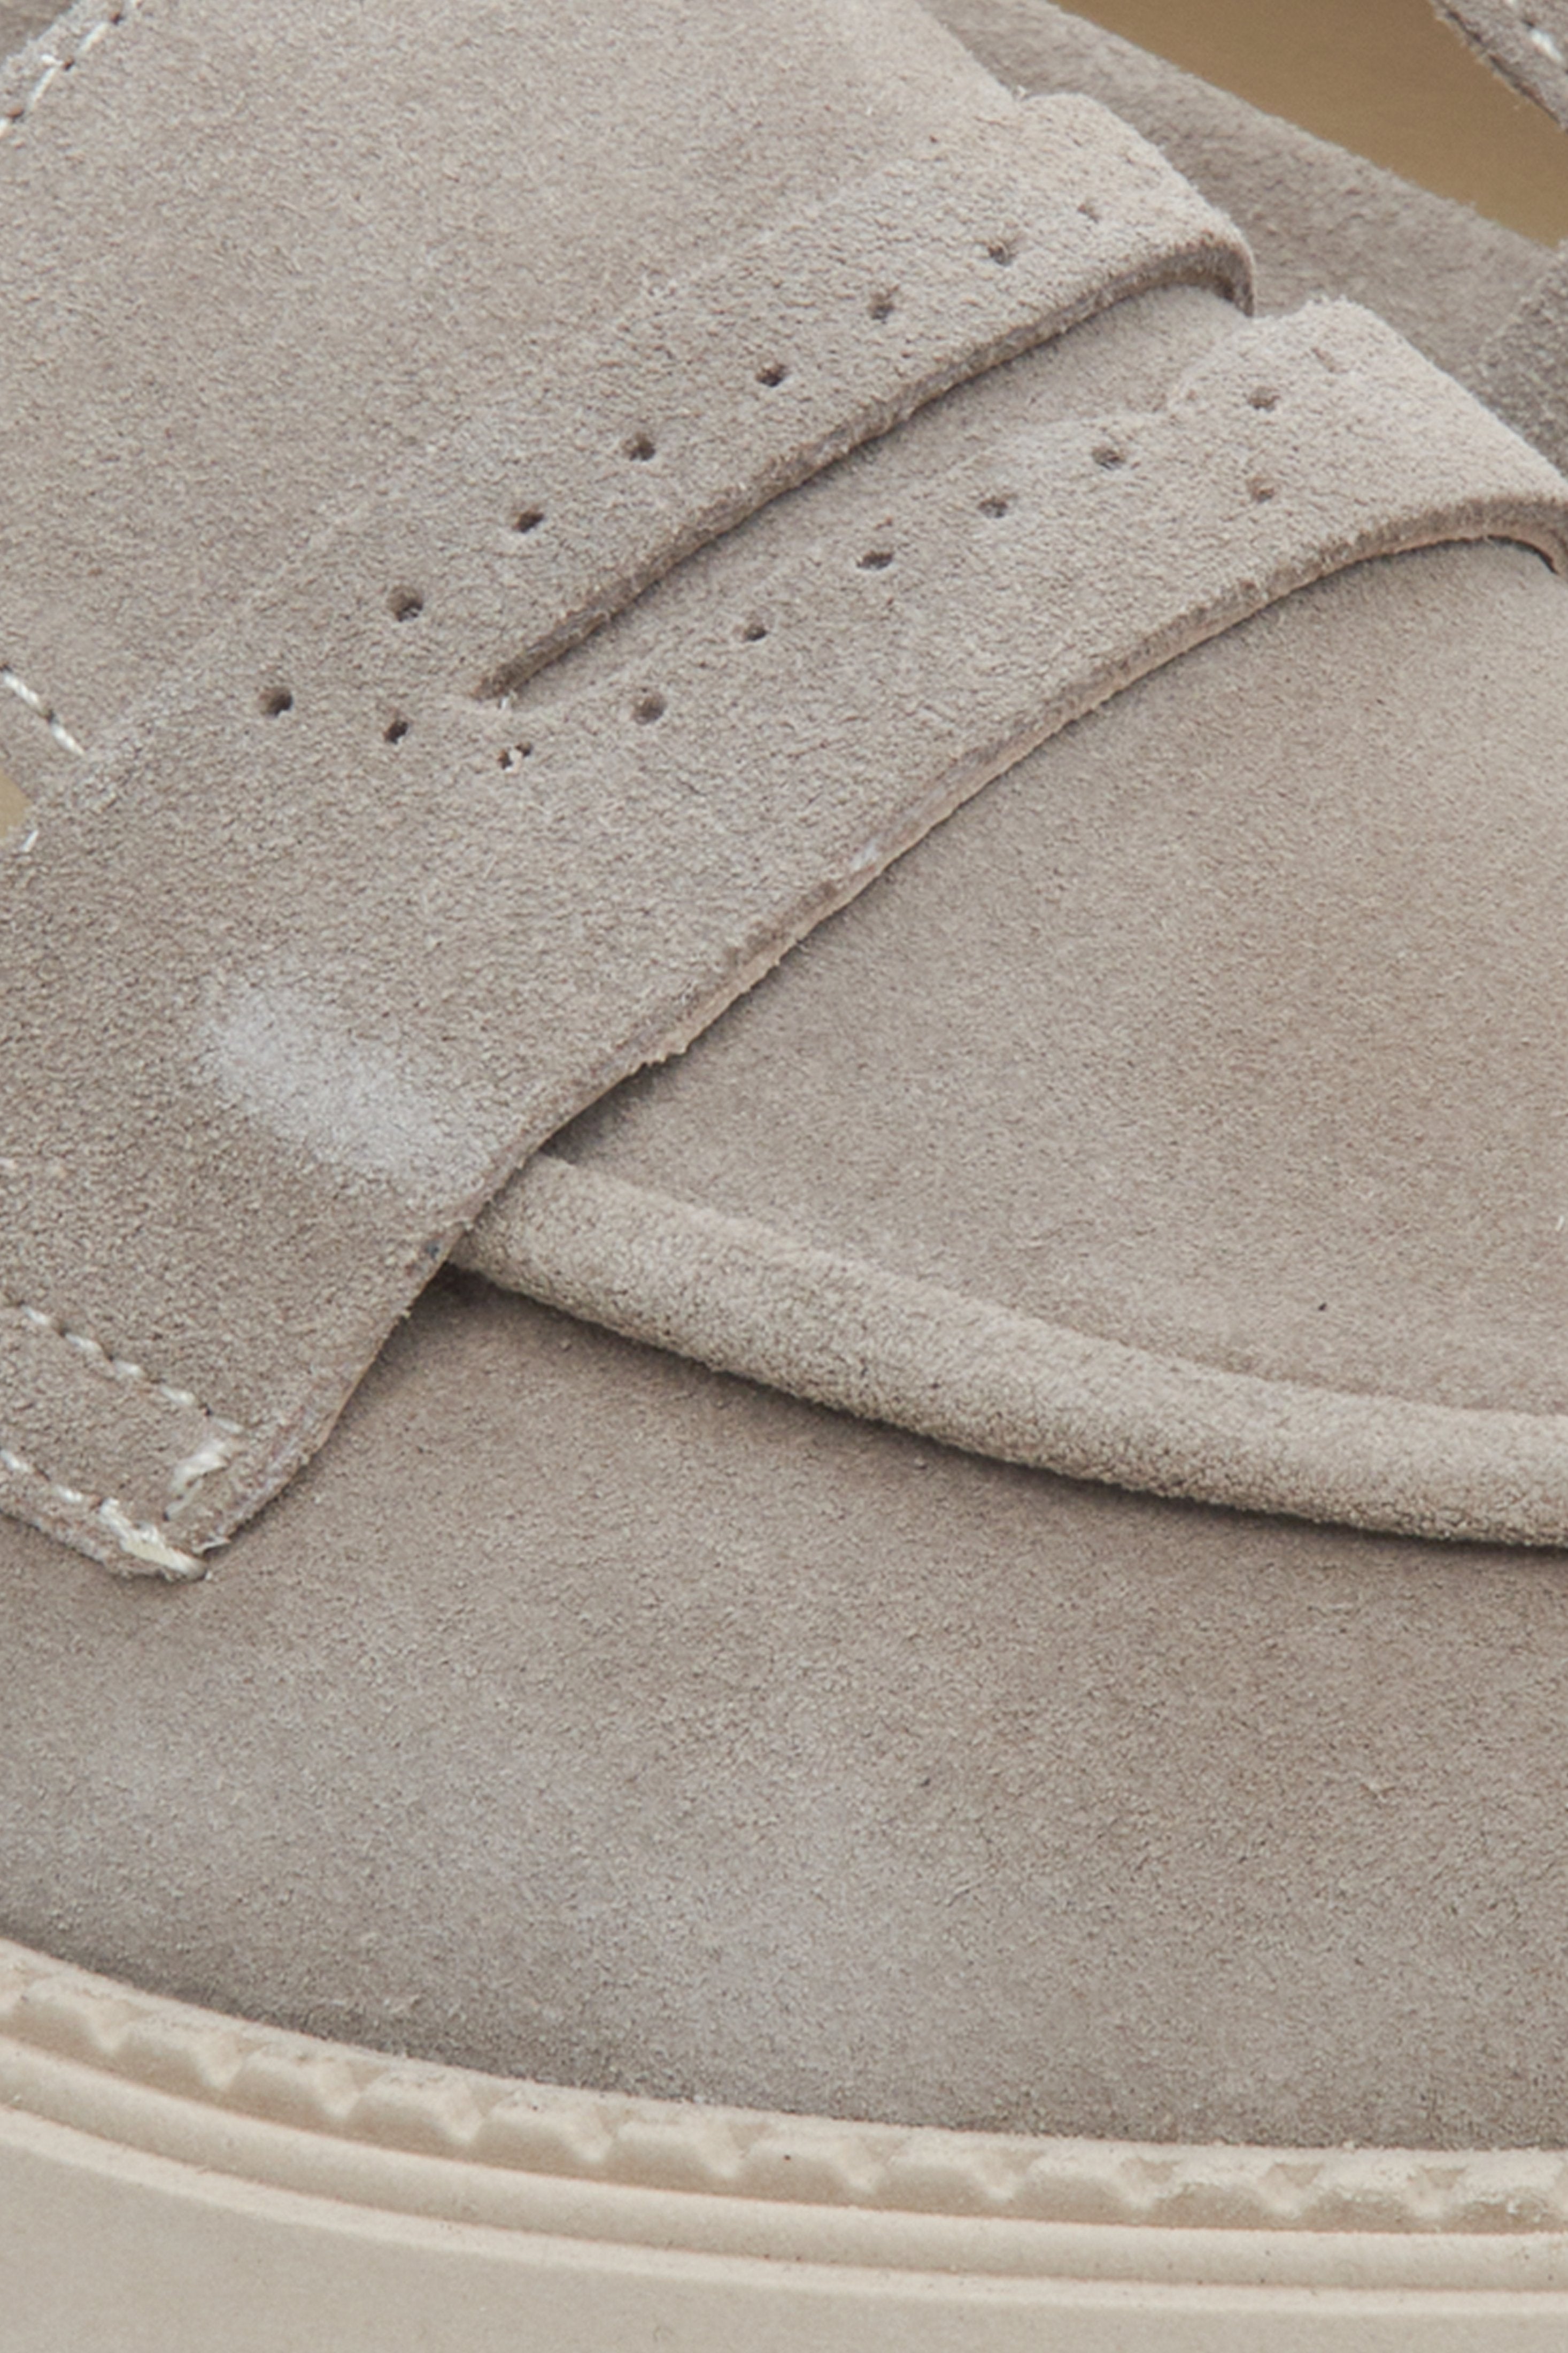 Buty mokasyny damskie z weluru naturalnego w kolorze szarym - zbliżenie na detale.